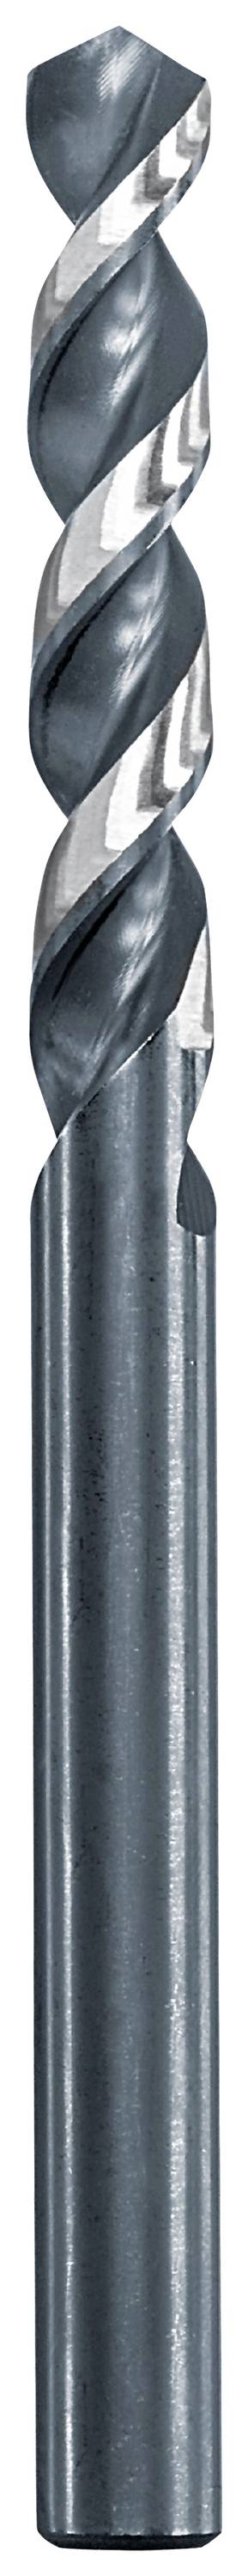 KWB 258640 Metall-Spiralbohrer 4 mm Gesamtlänge 75 mm 1 St.